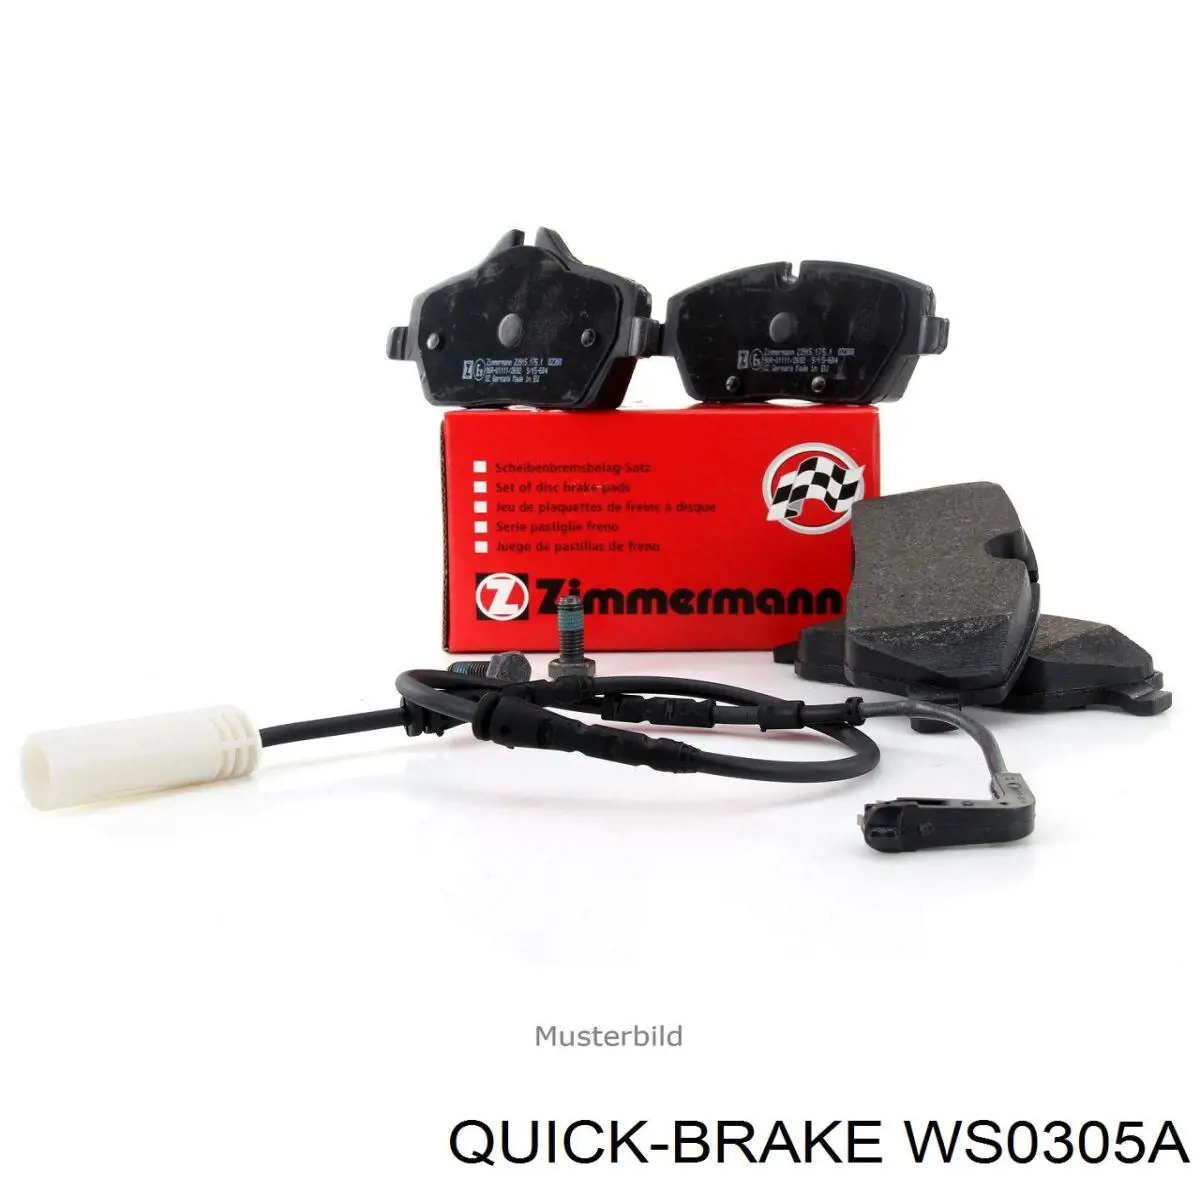 WS0305A Quick Brake contacto de aviso, desgaste de los frenos, trasero